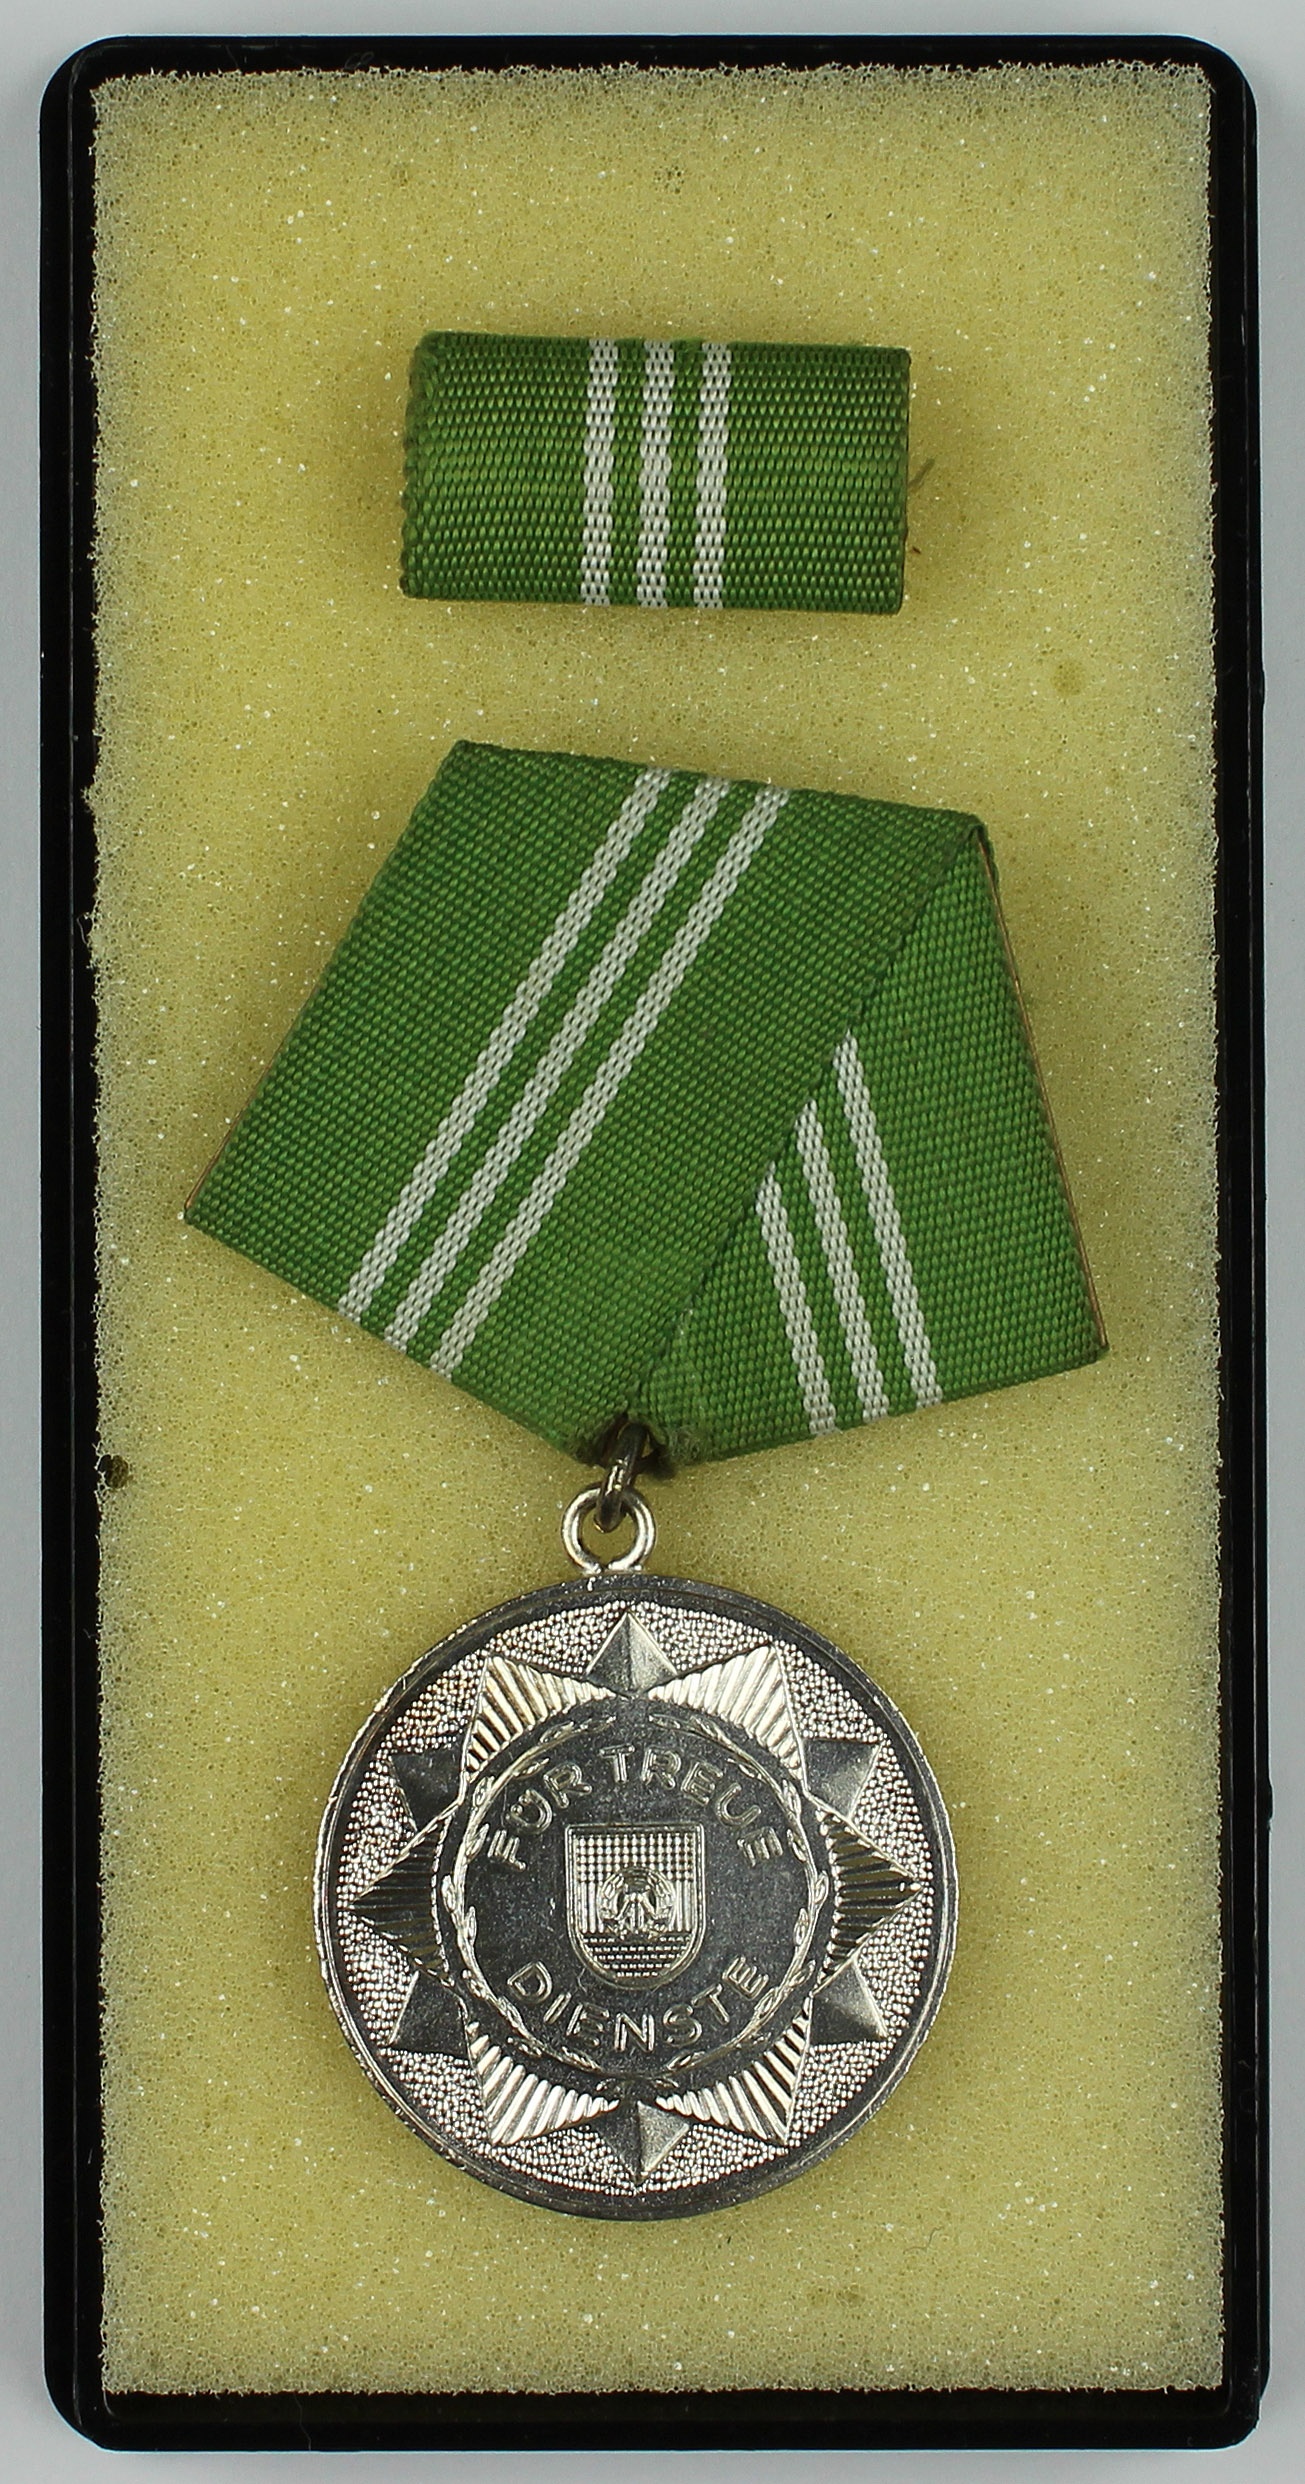 Medaille, Für treue Dienste, DDR (Museum Wolmirstedt RR-F)